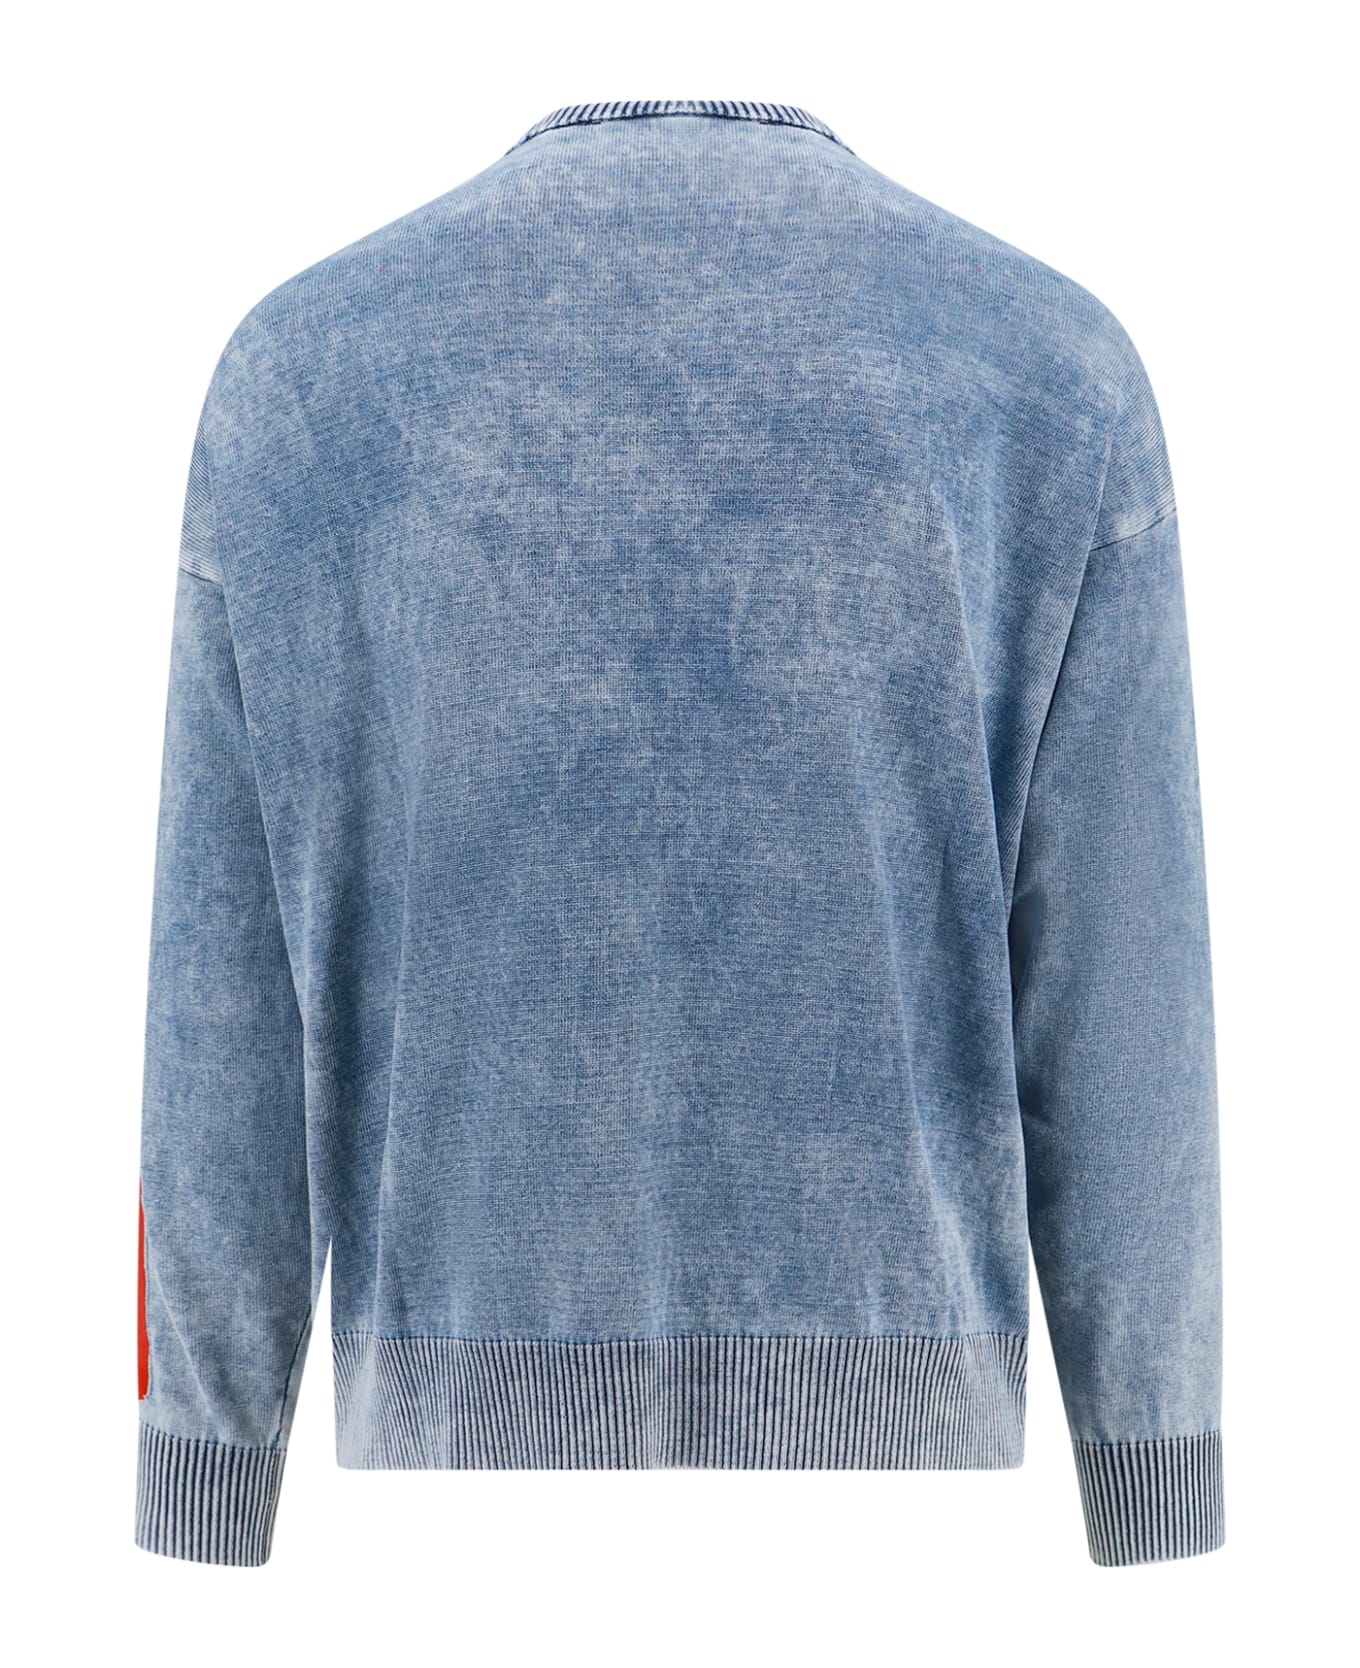 Diesel K-zeros Sweater - Blue